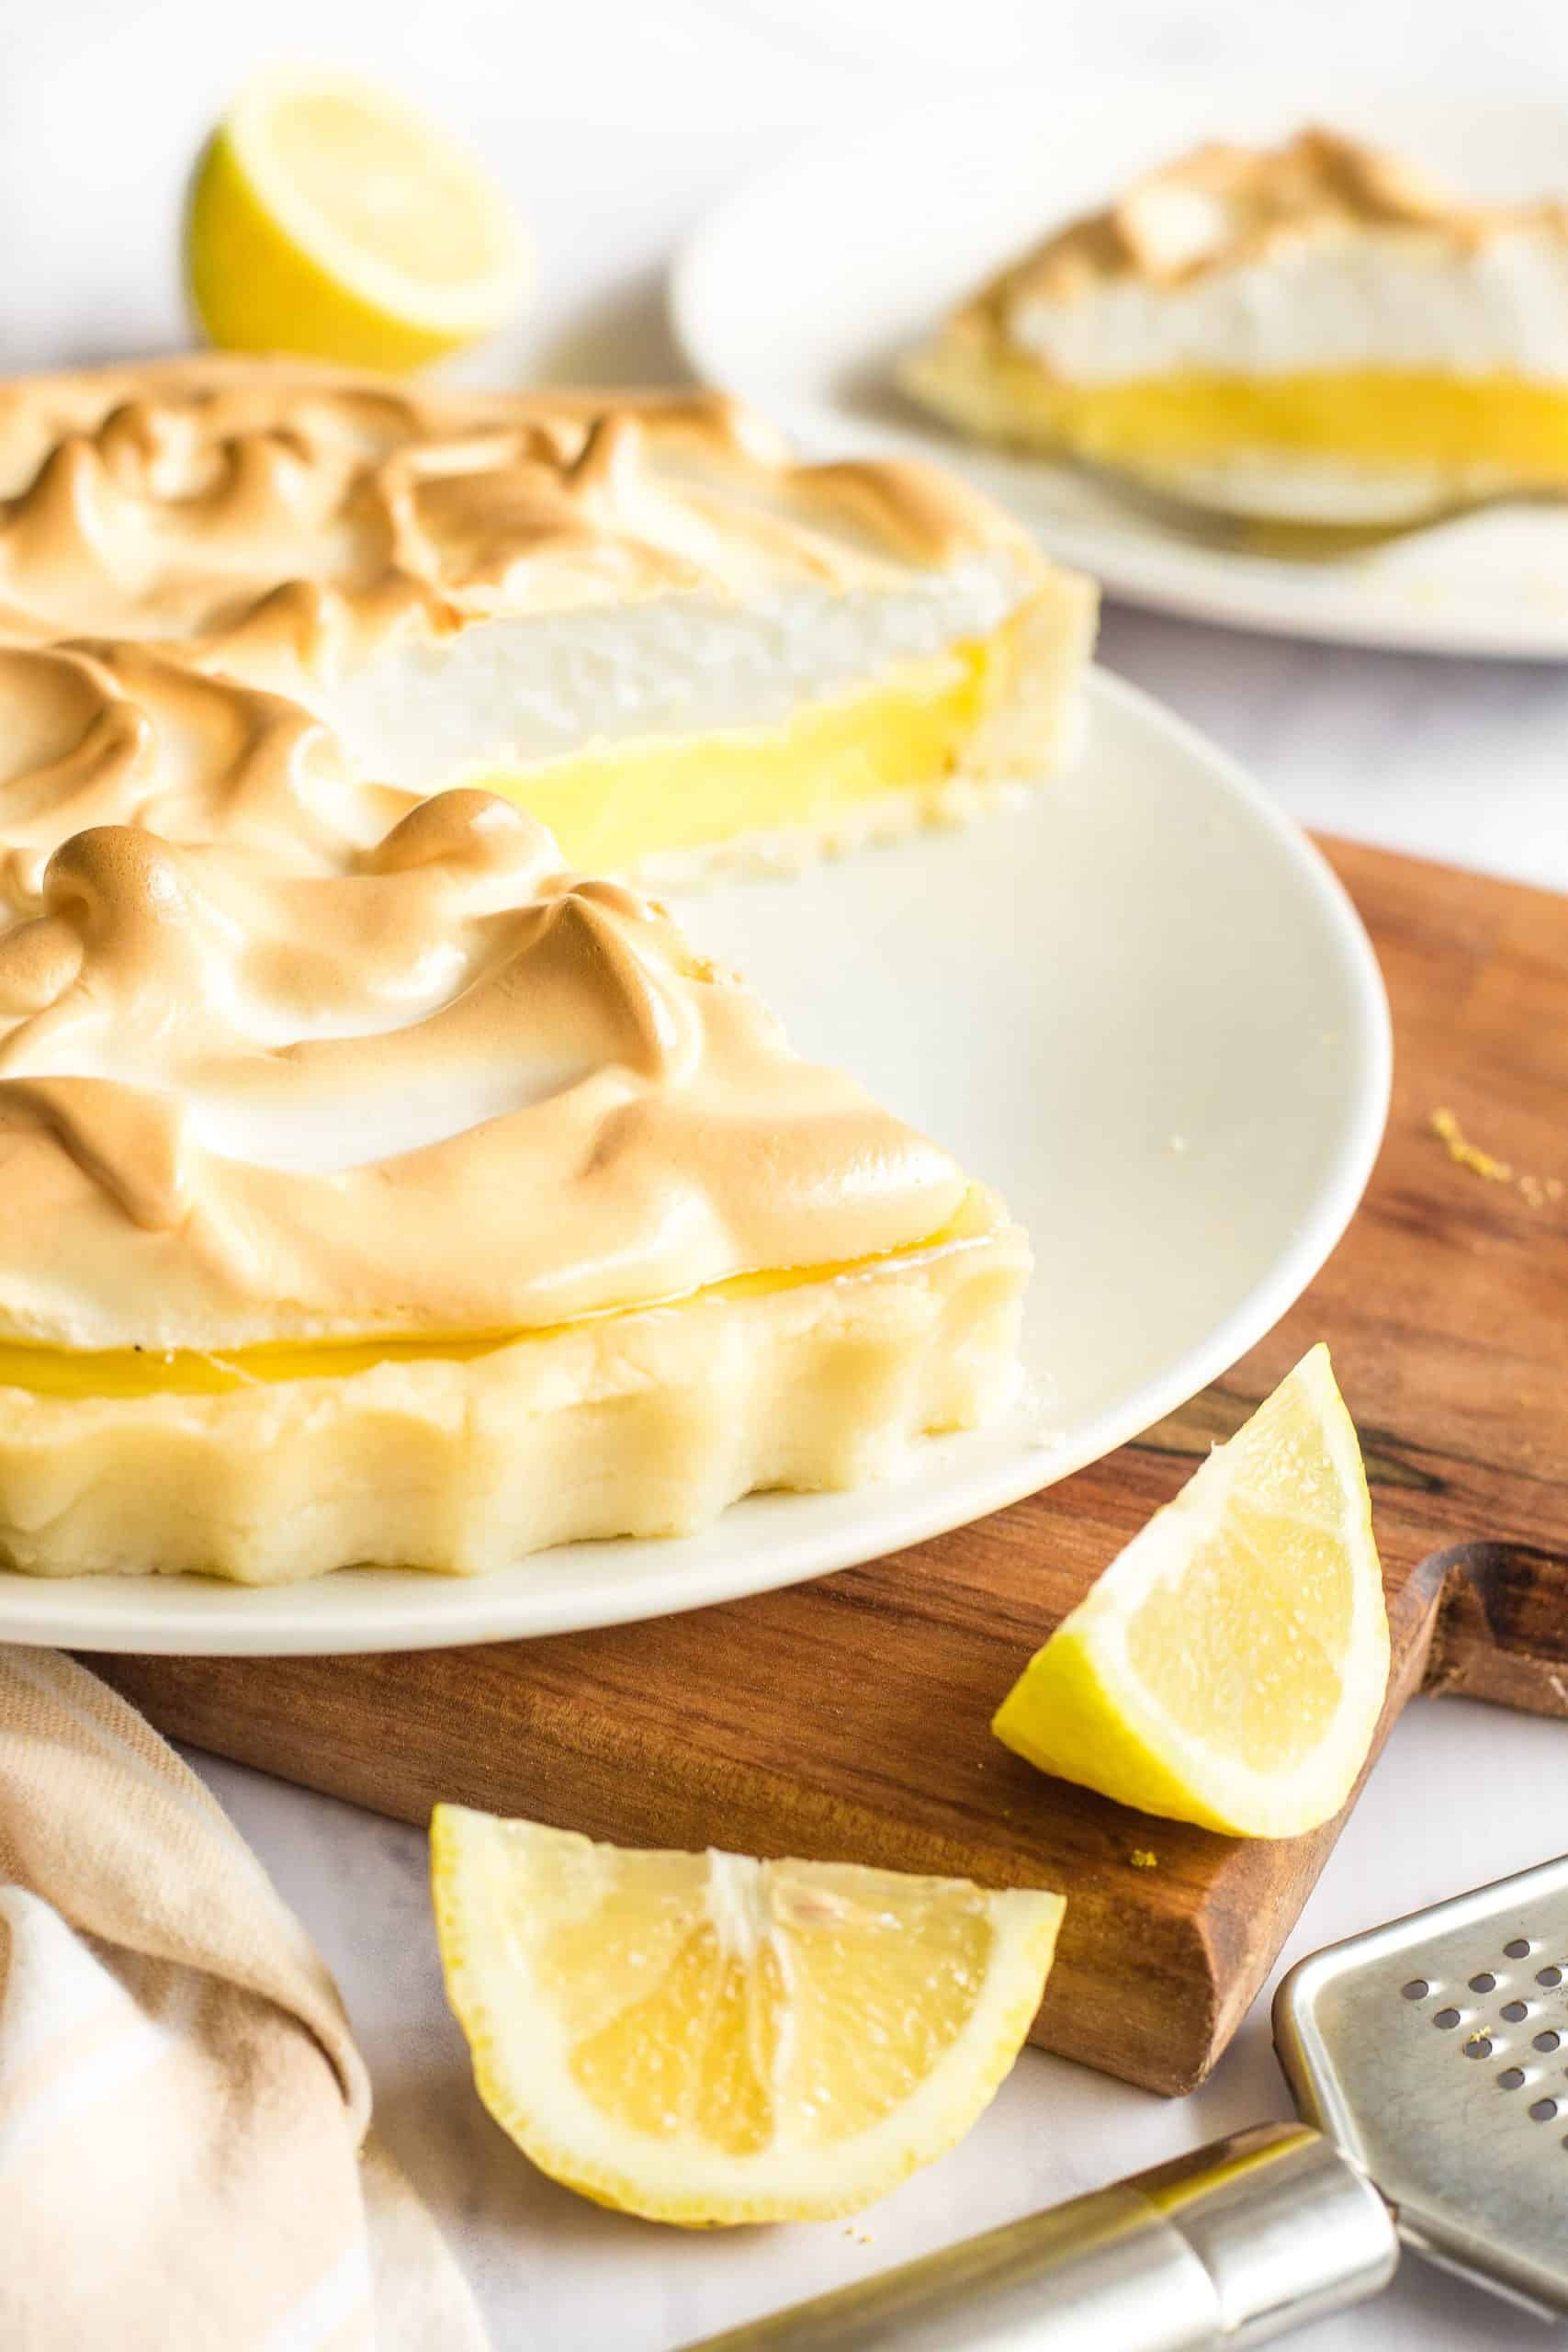 A half-eaten gluten-free lemon meringue pie on a wooden board with cut lemons.